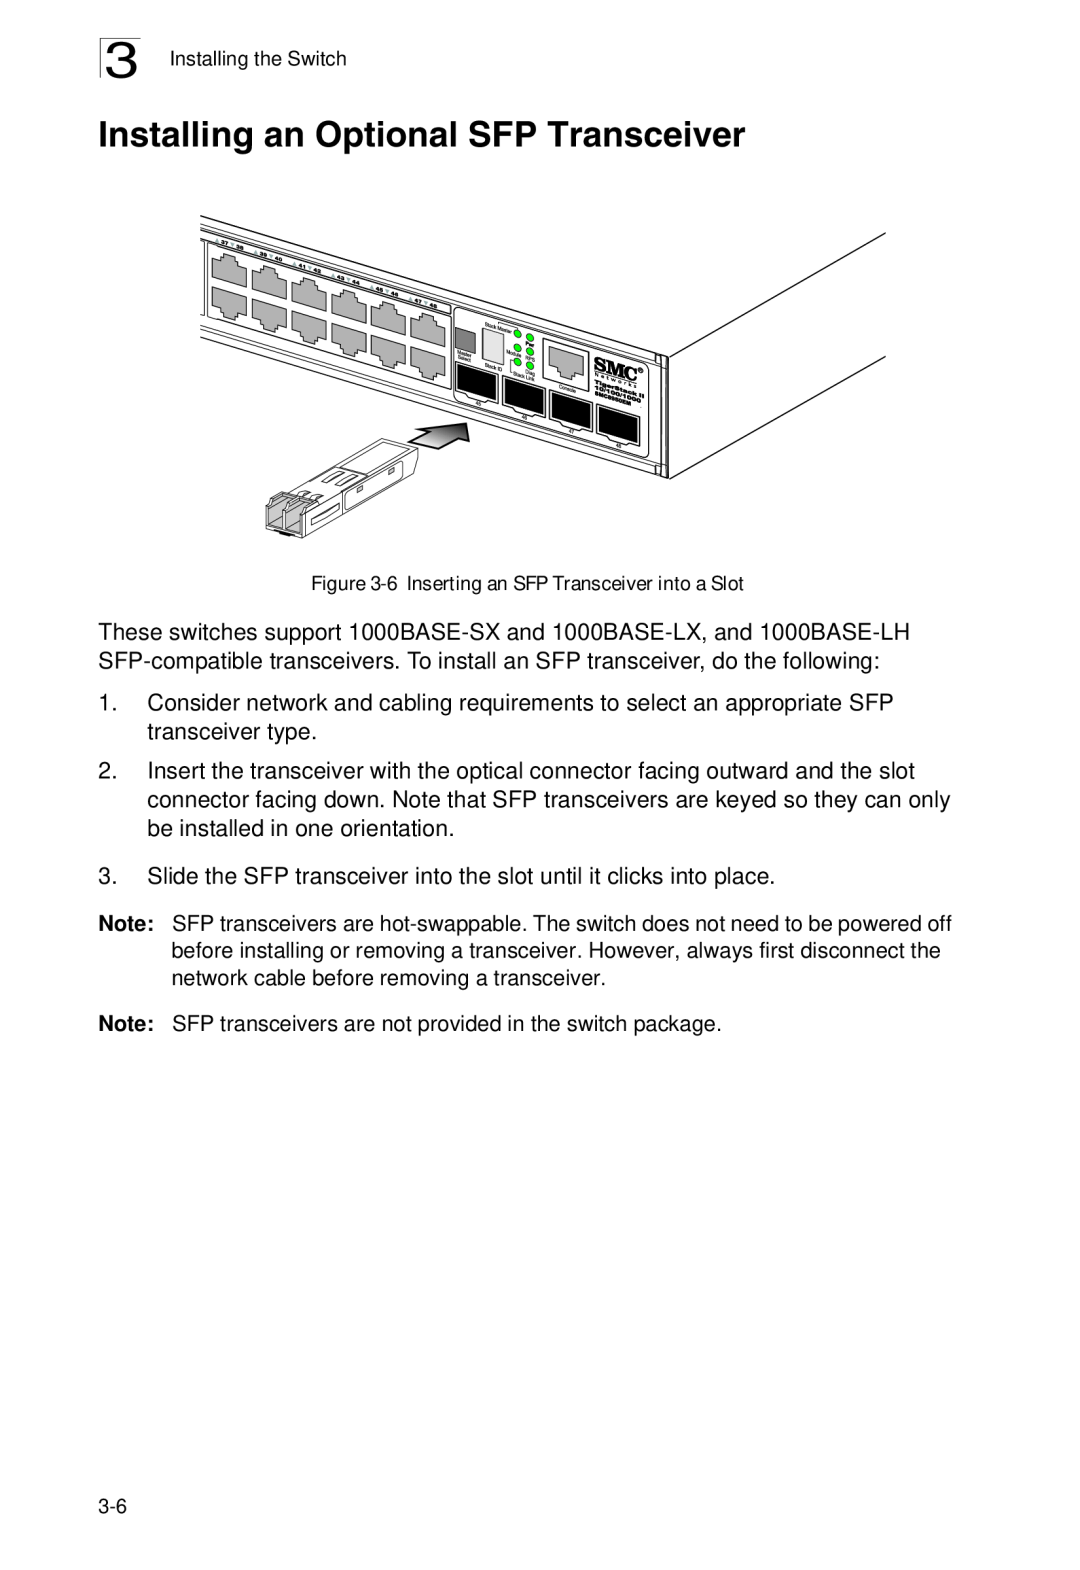 SMC Networks SMC8926EM, SMC8950EM manual Installing an Optional SFP Transceiver, 6 Inserting an SFP Transceiver into a Slot 